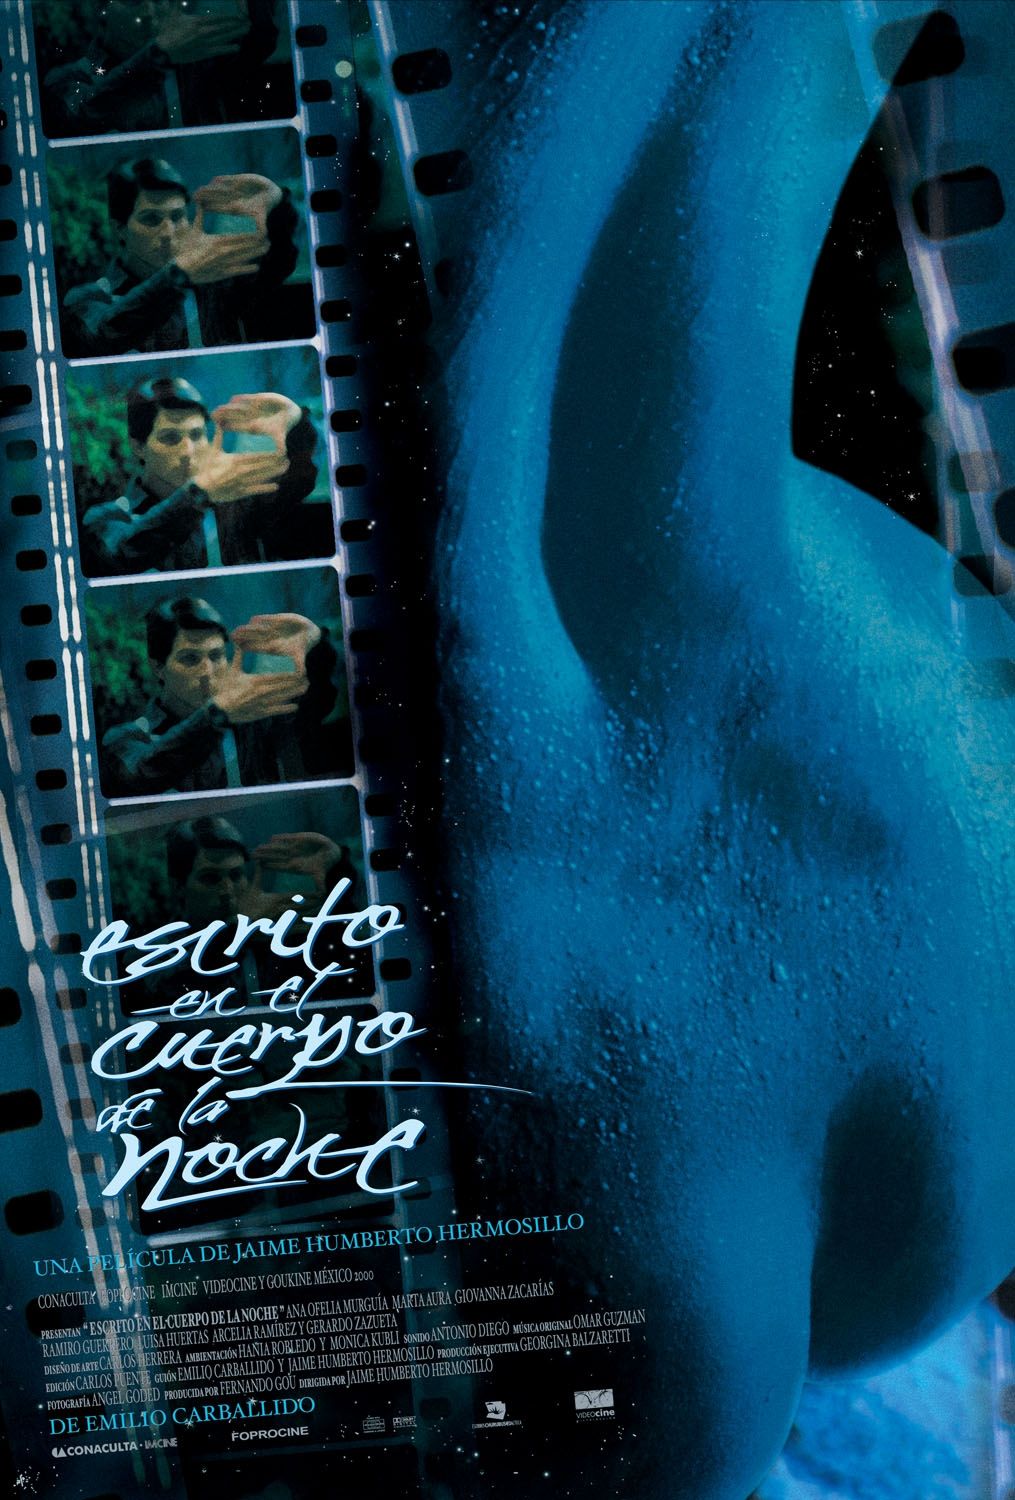 Extra Large Movie Poster Image for Escrito en el cuerpo de la noche 